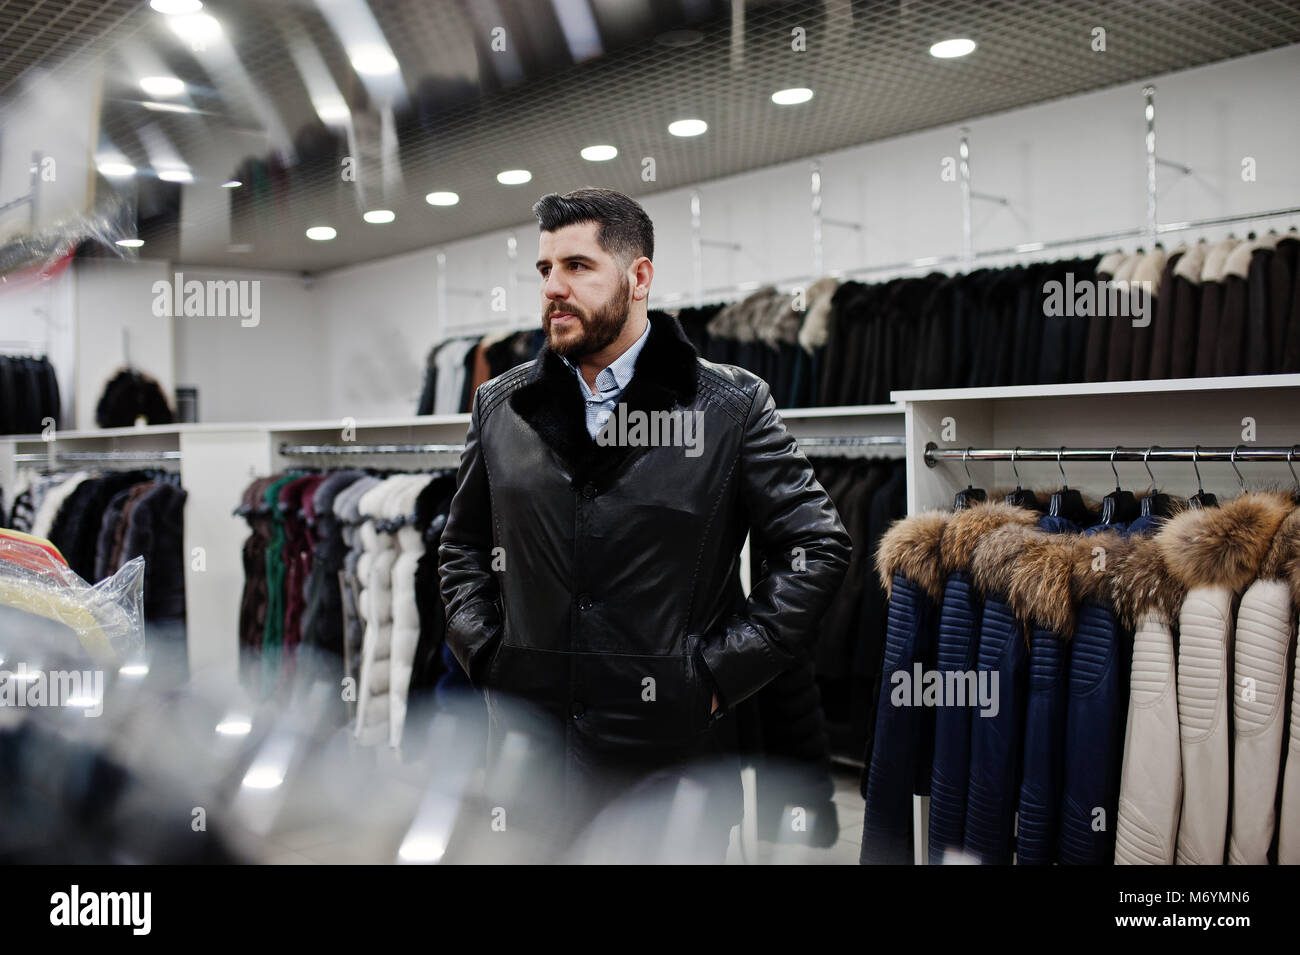 Stilvolle türkischen Mann im Store von pelzmäntel und Lederjacken.  Erfolgreiche arabische Bart Mann Stockfotografie - Alamy